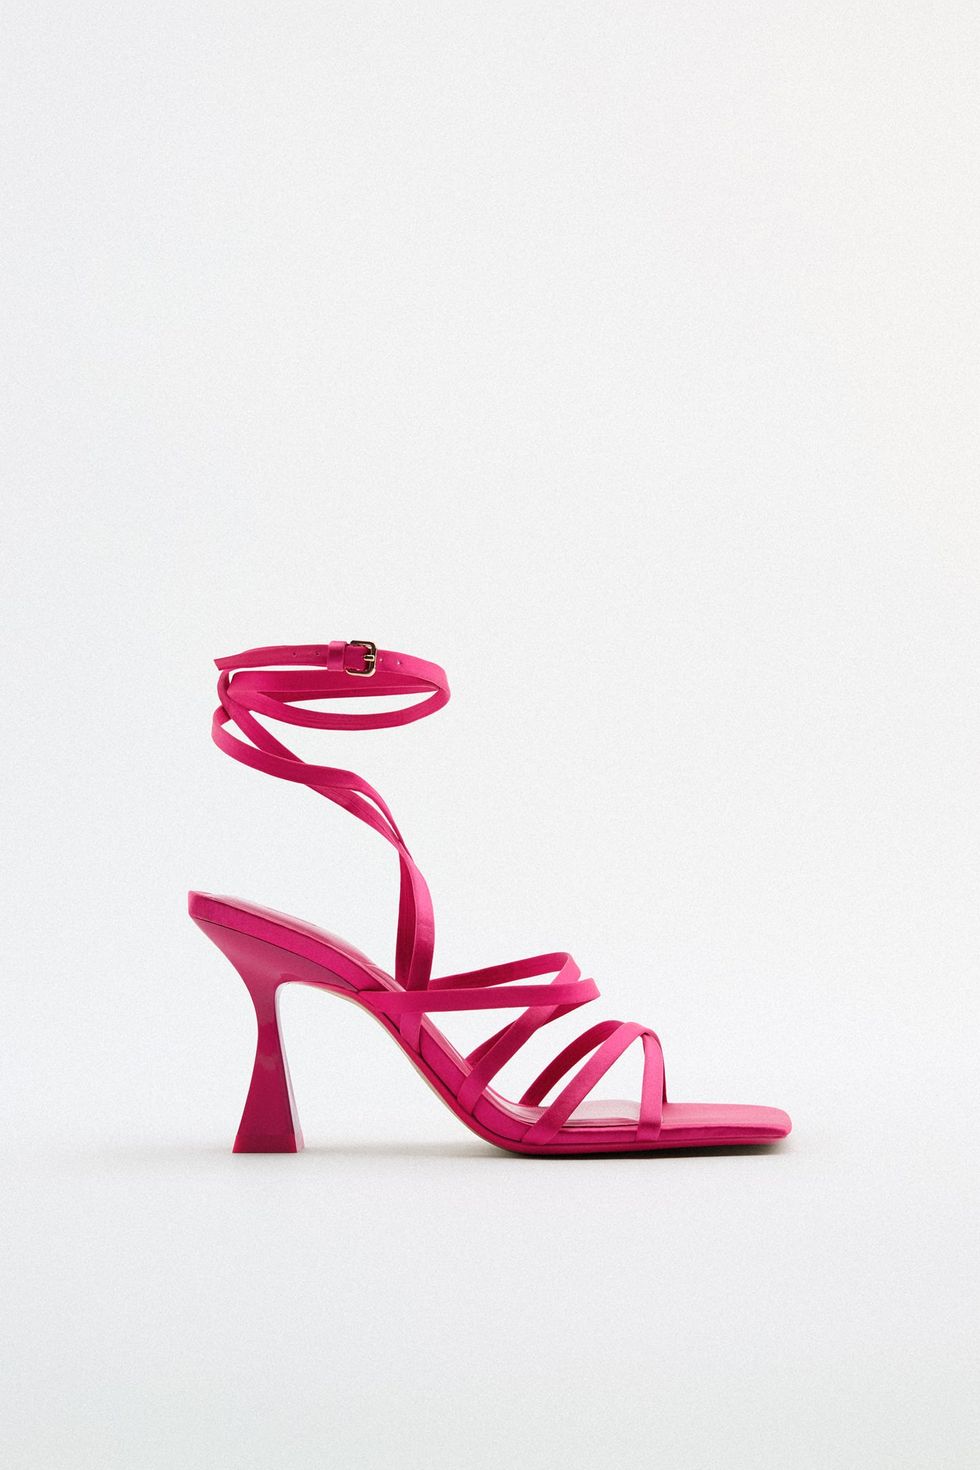 moda estate 2022 i sandali rosa di giorgia soleri su instagram sono cool scopri le scarpe con tacco cioè le scarpe eleganti da avere secondo le tendenze donna